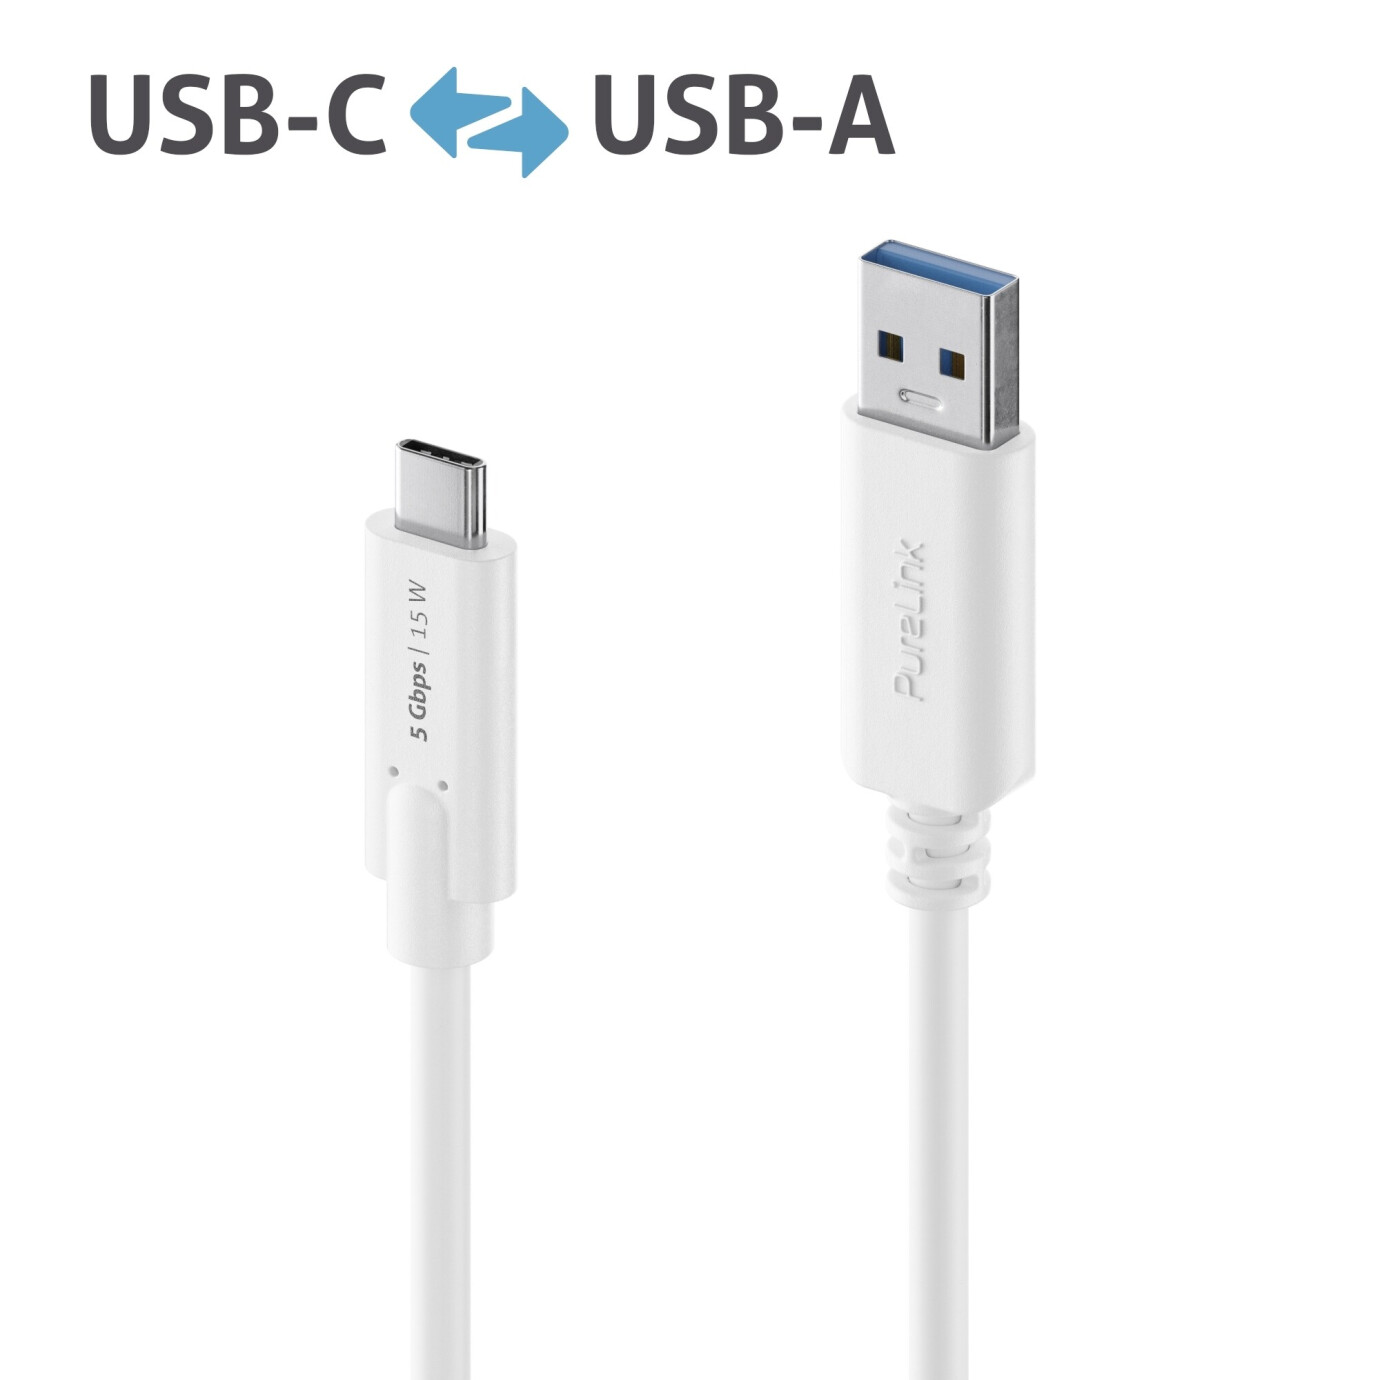 Purelink IS2600-005 USB-C auf USB-A Kabel 0,5m weiß